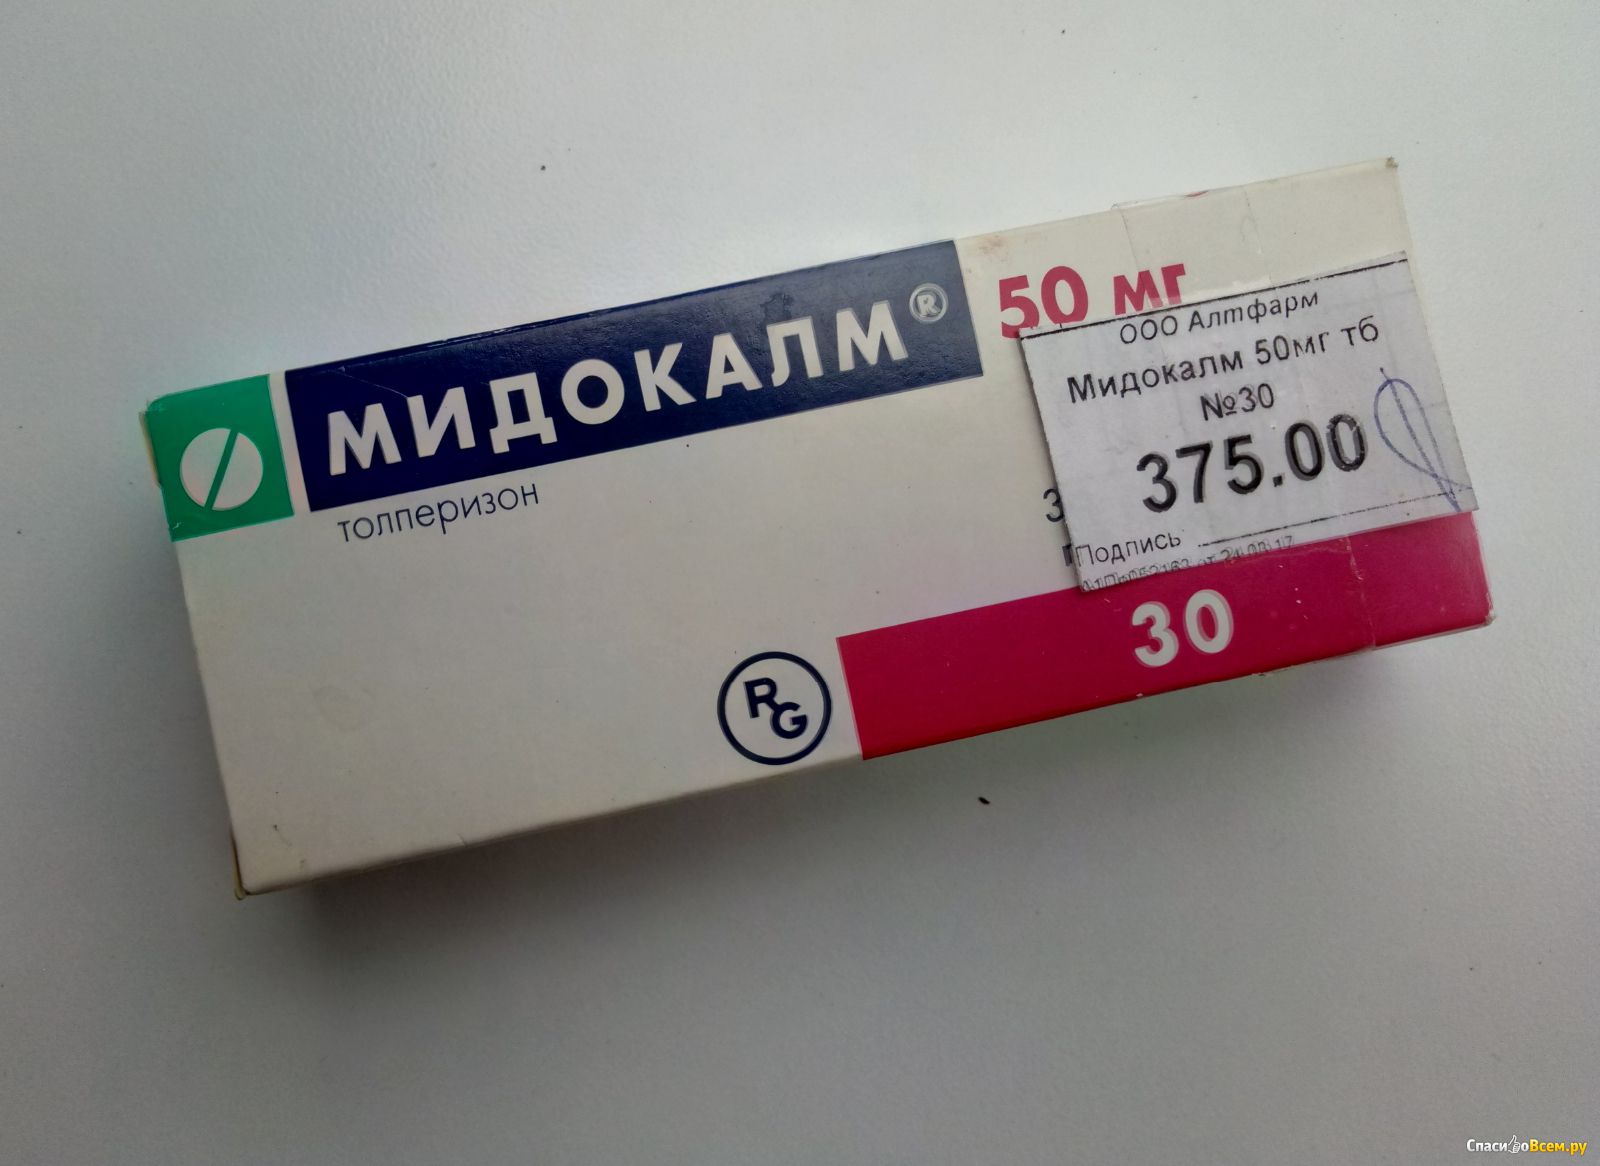 Толперизон Цена В Новосибирске Таблетки